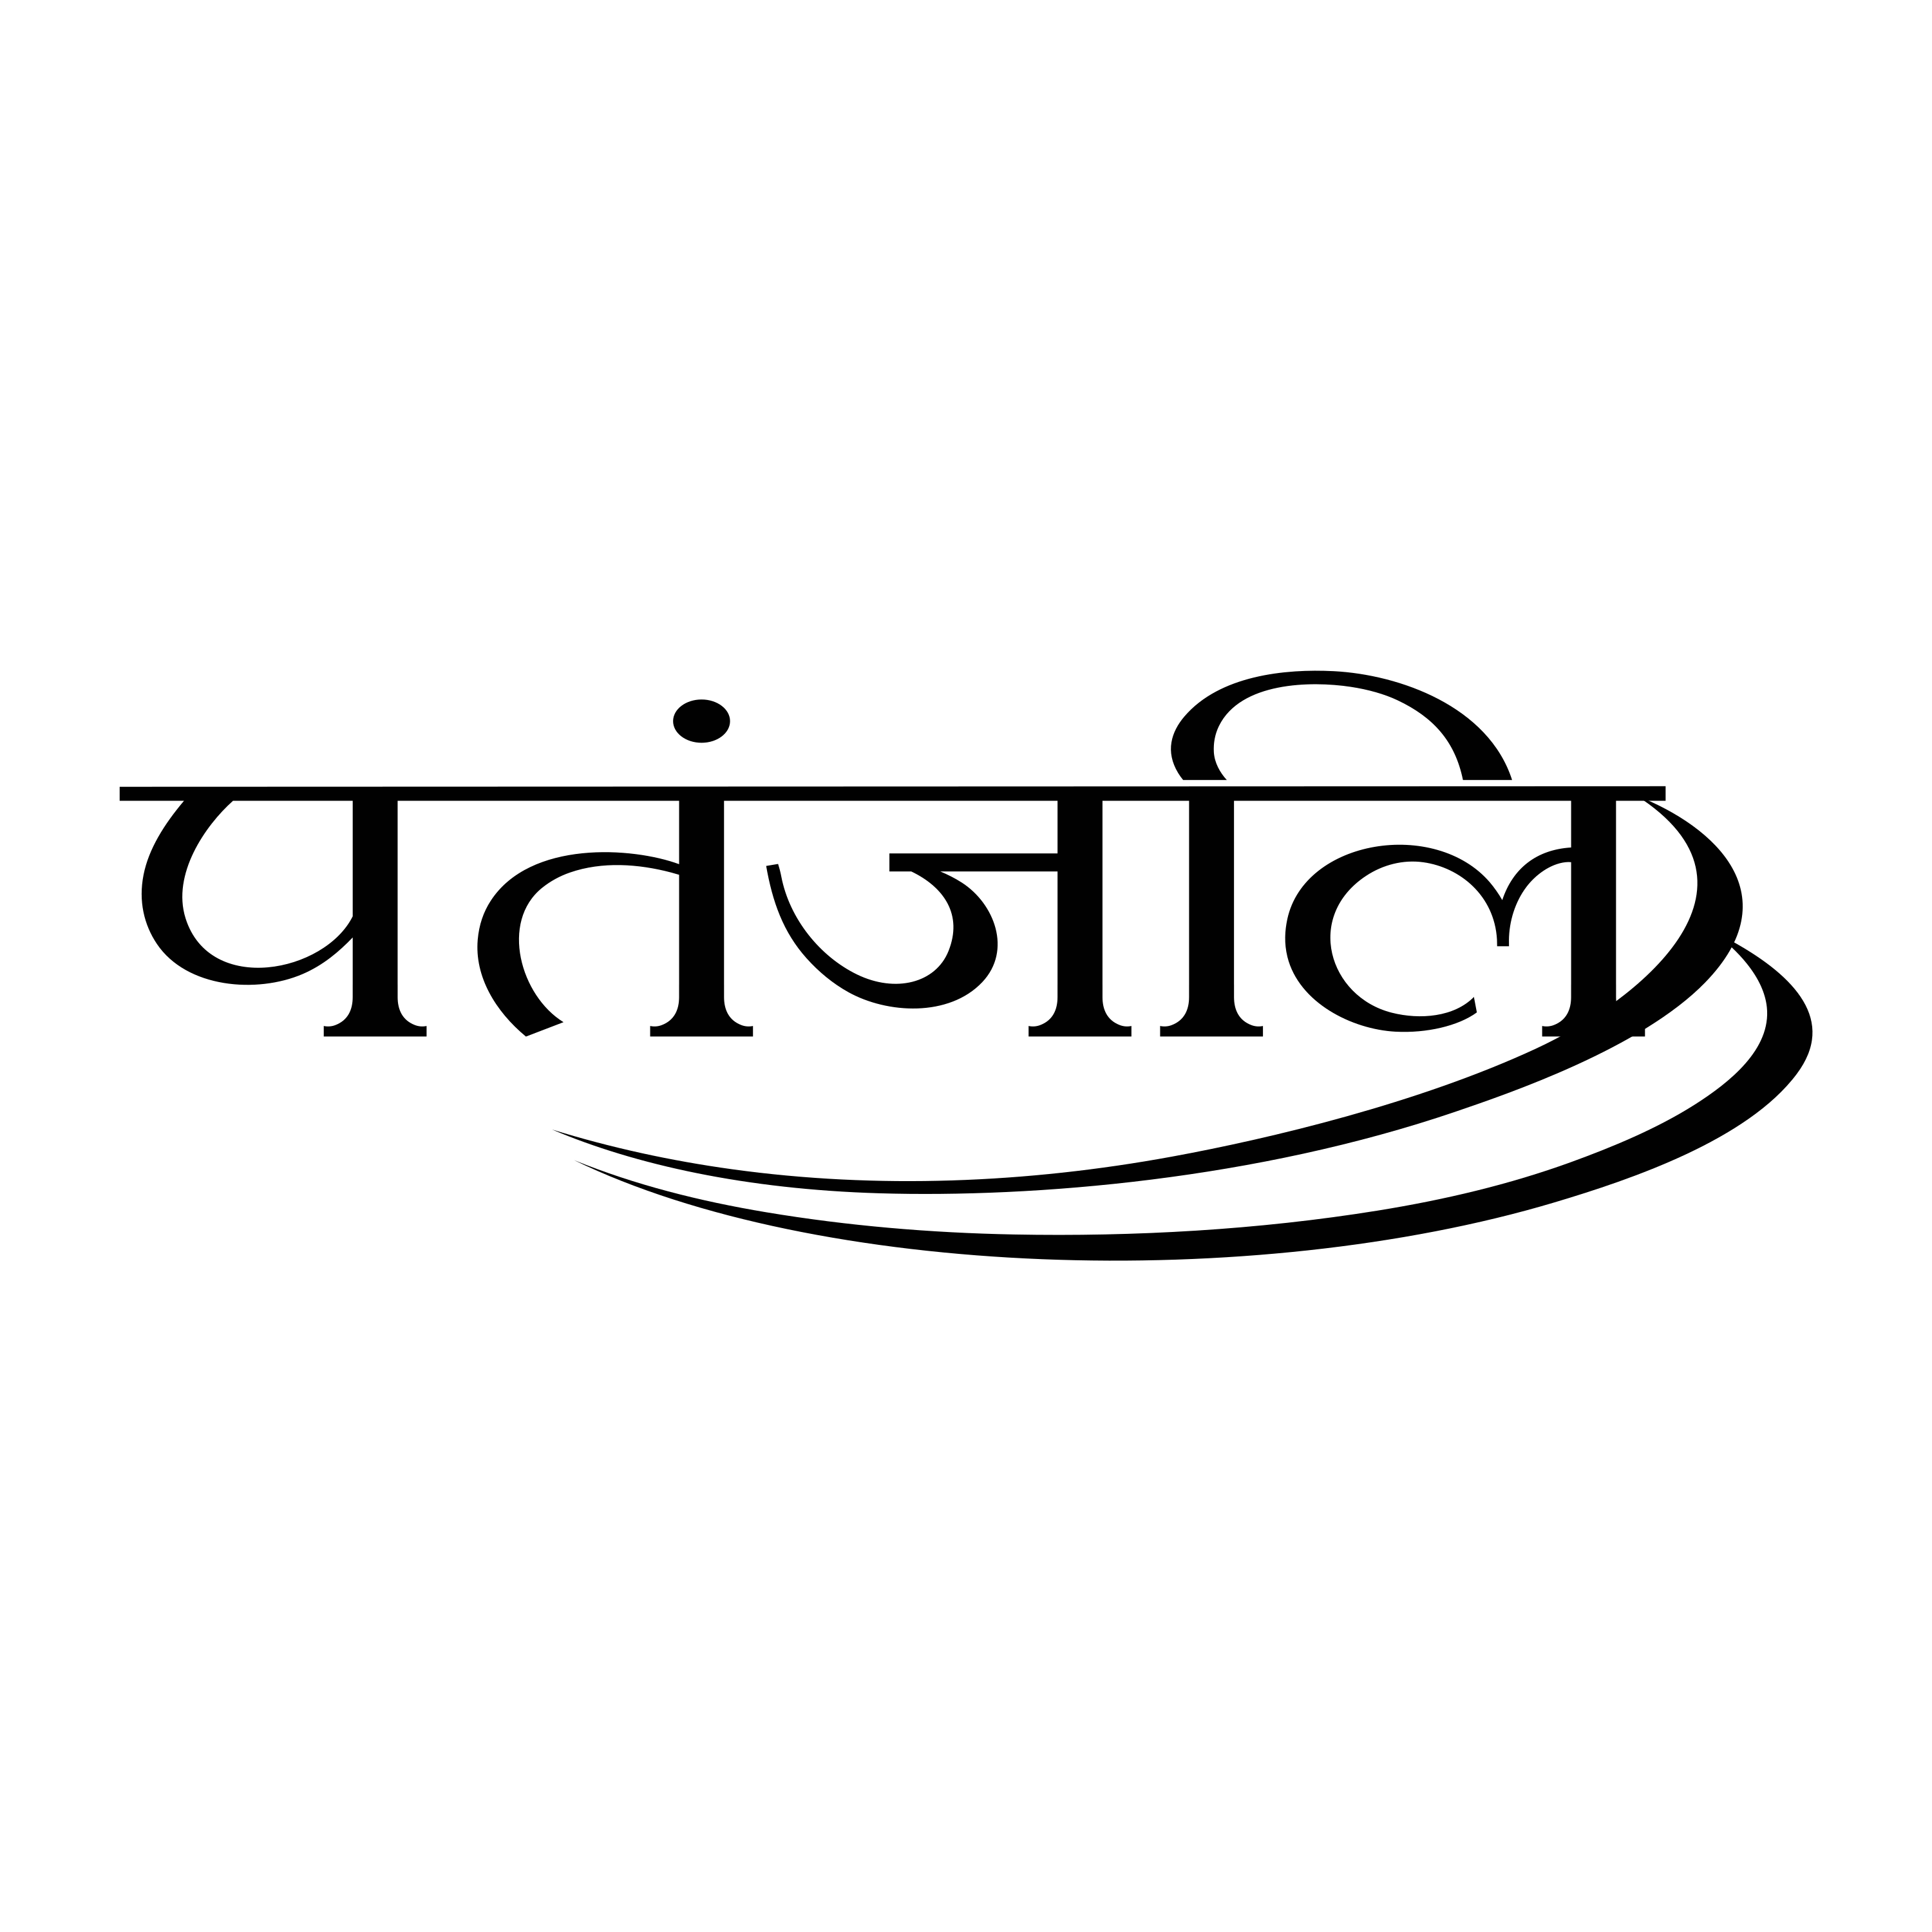 Patanjali Hindi Logo Transparent Photo